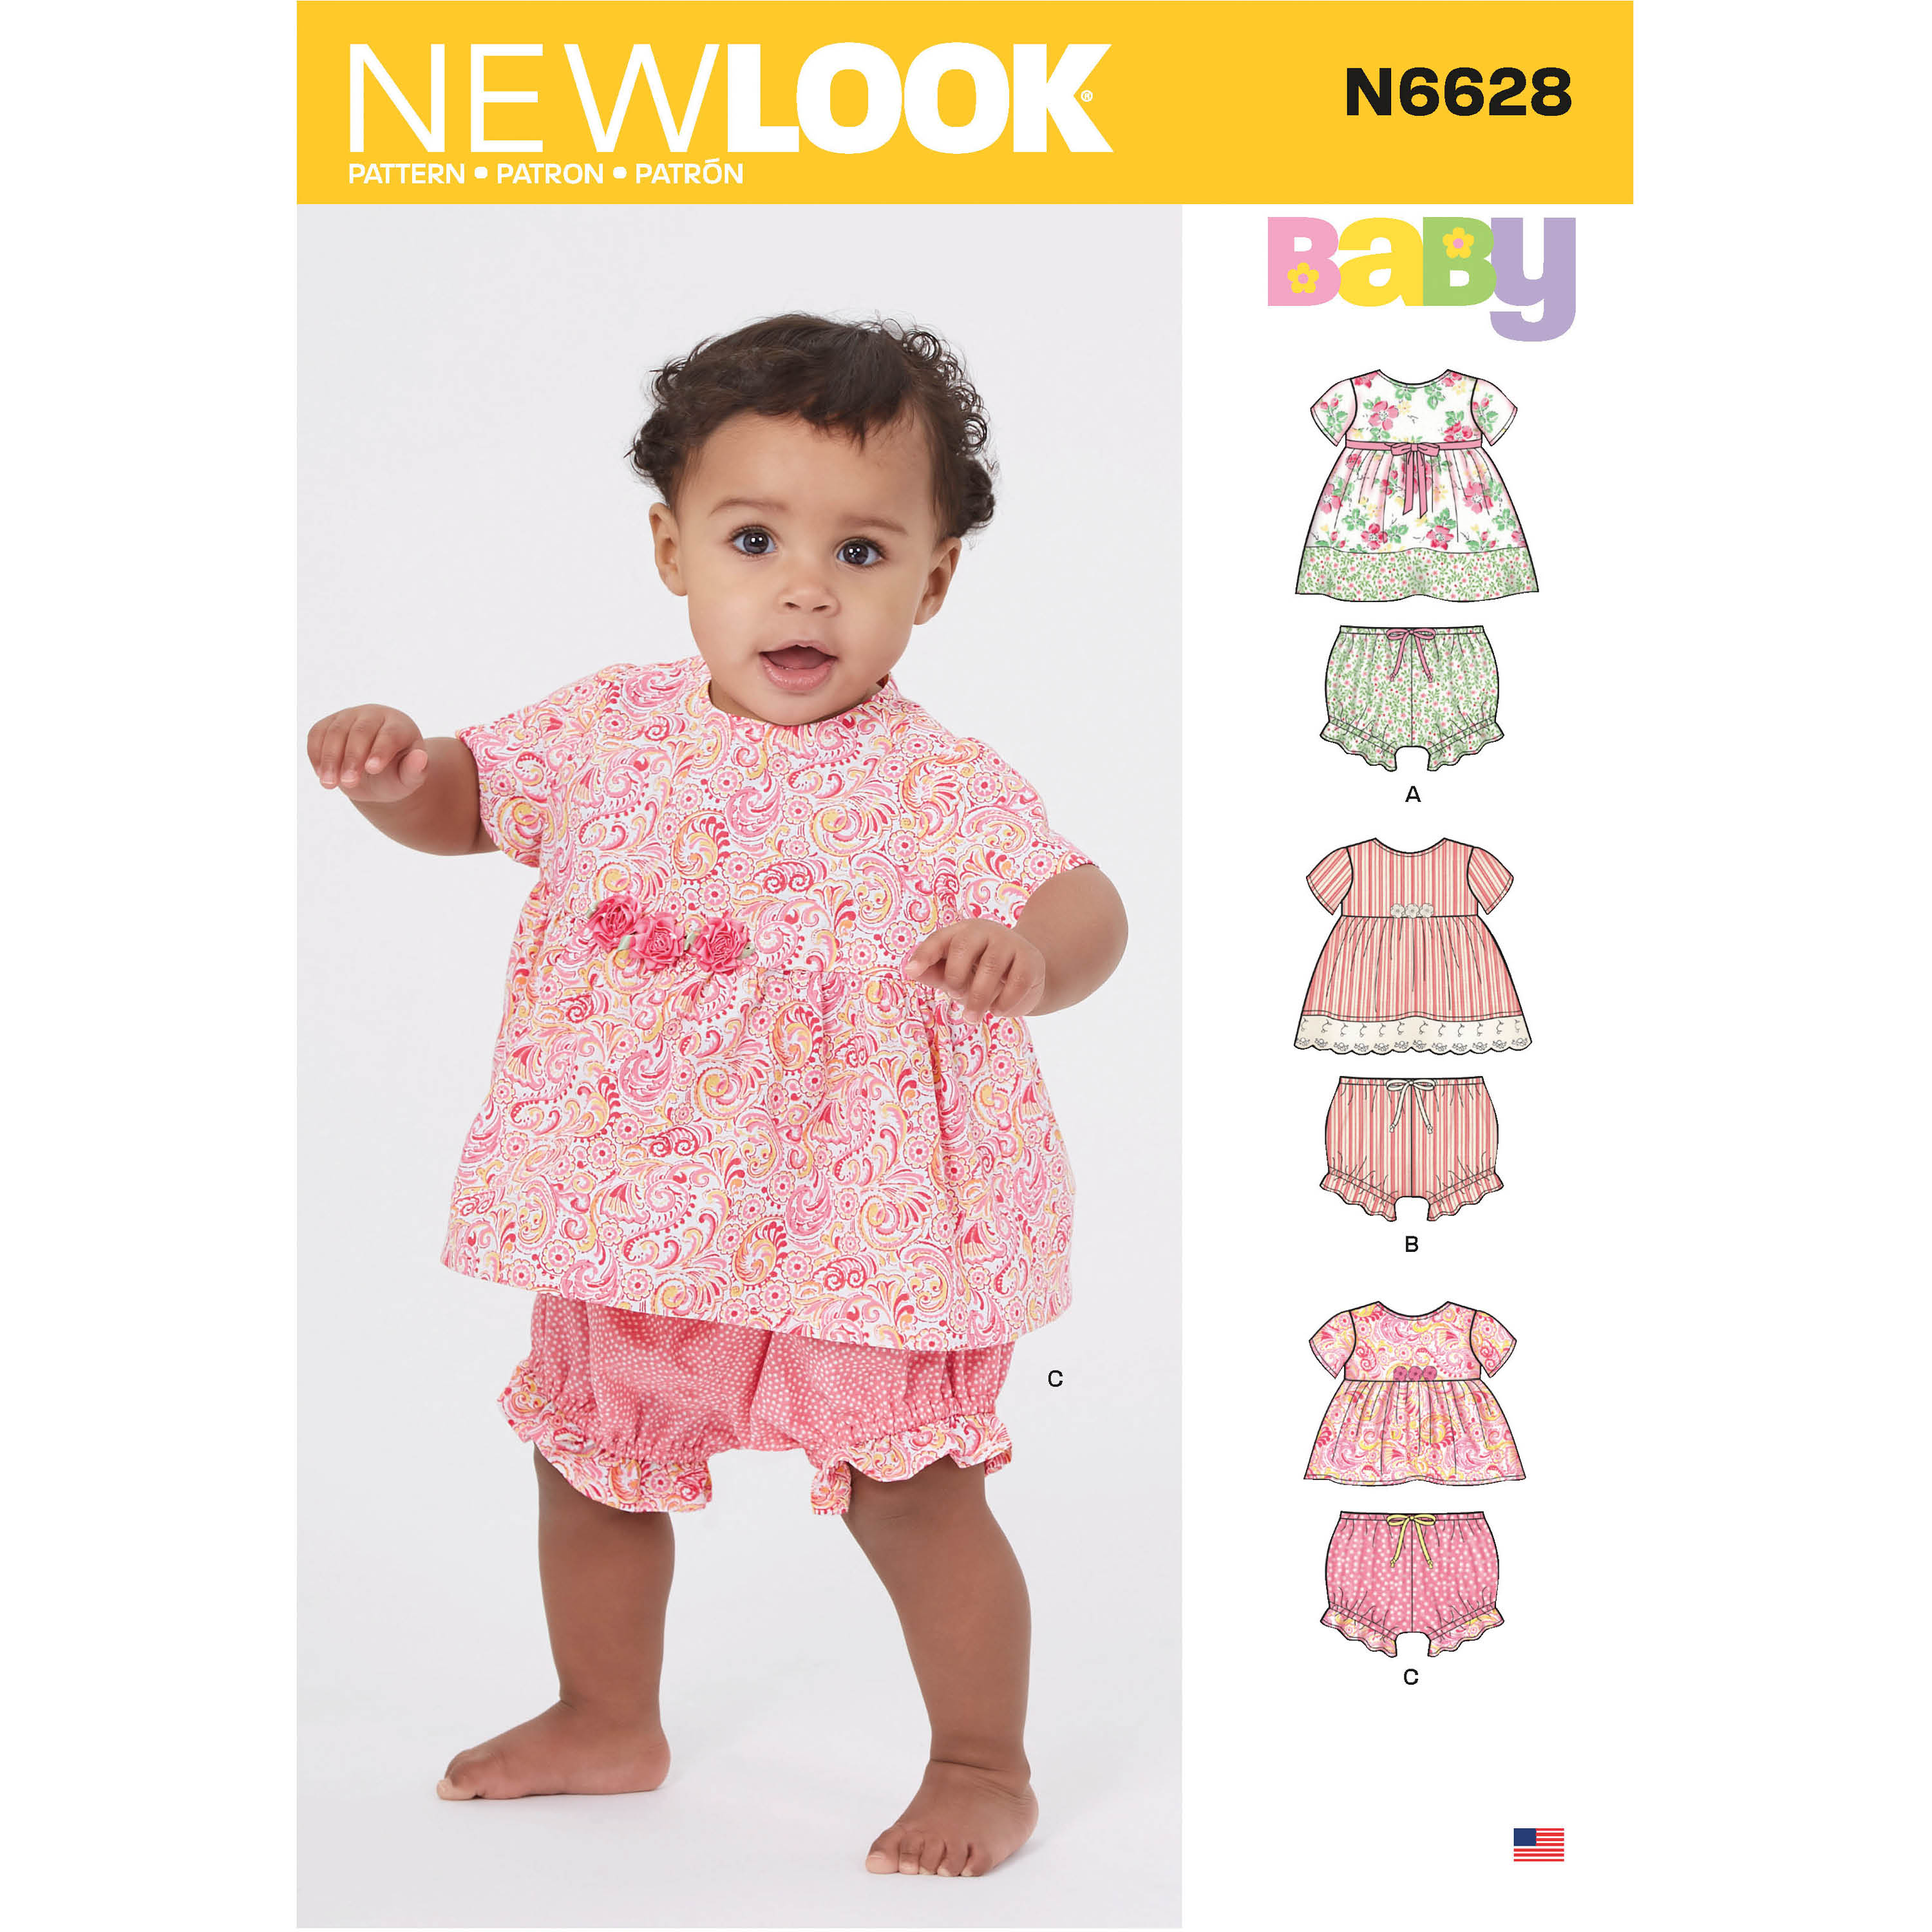 New Look 6628 Babies' Sportswear